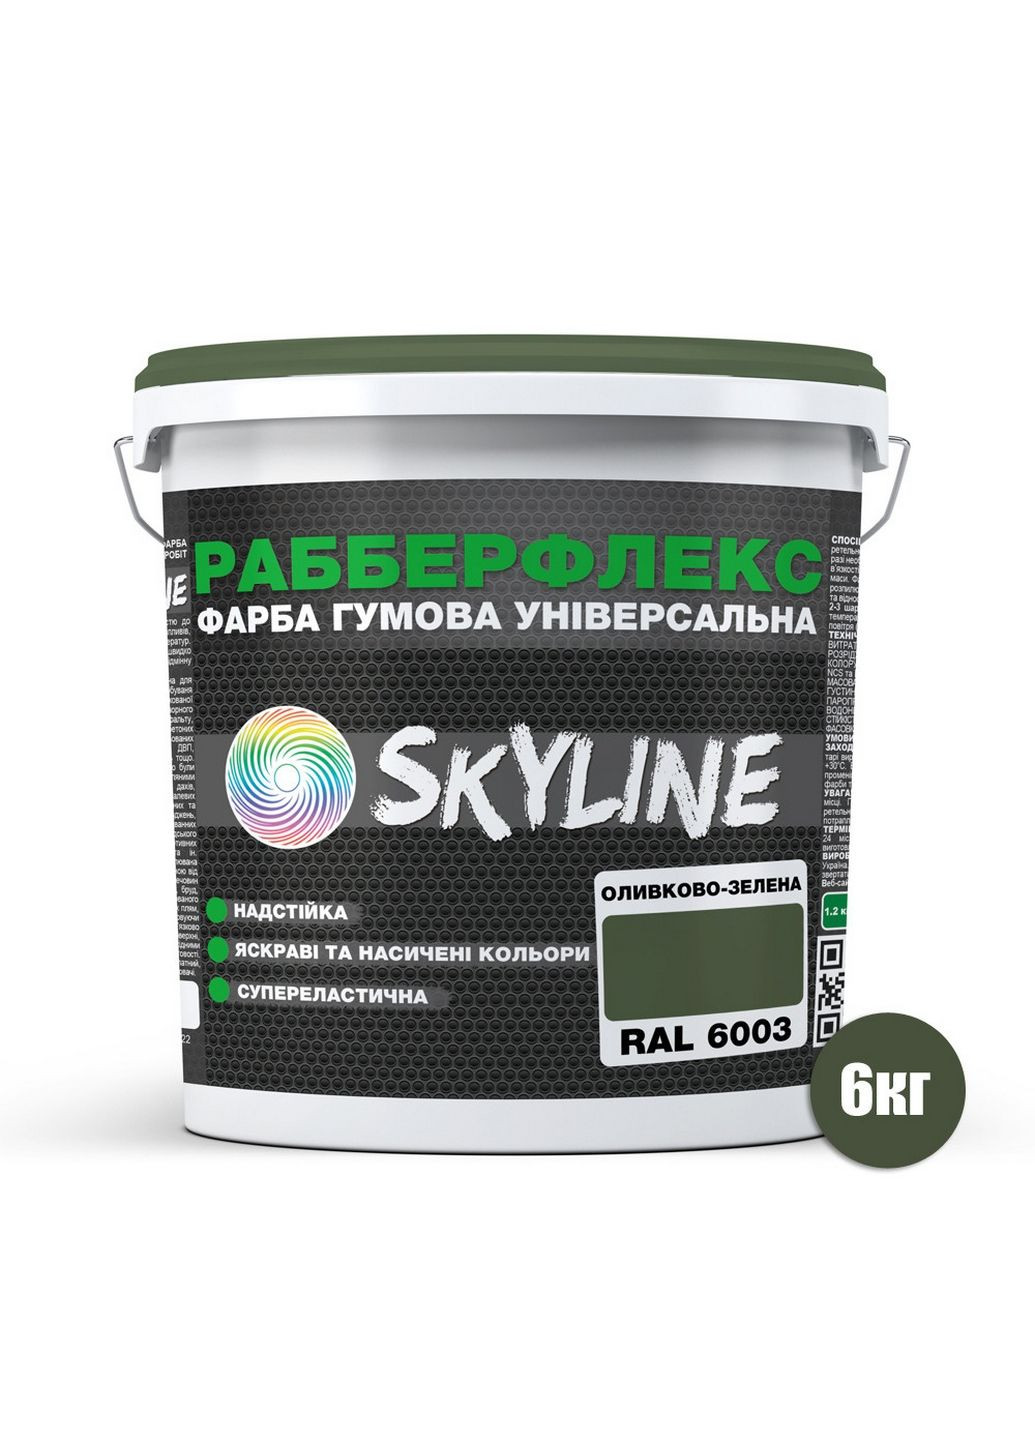 Надстійка фарба гумова супереластична «РабберФлекс» 6 кг SkyLine (289464297)